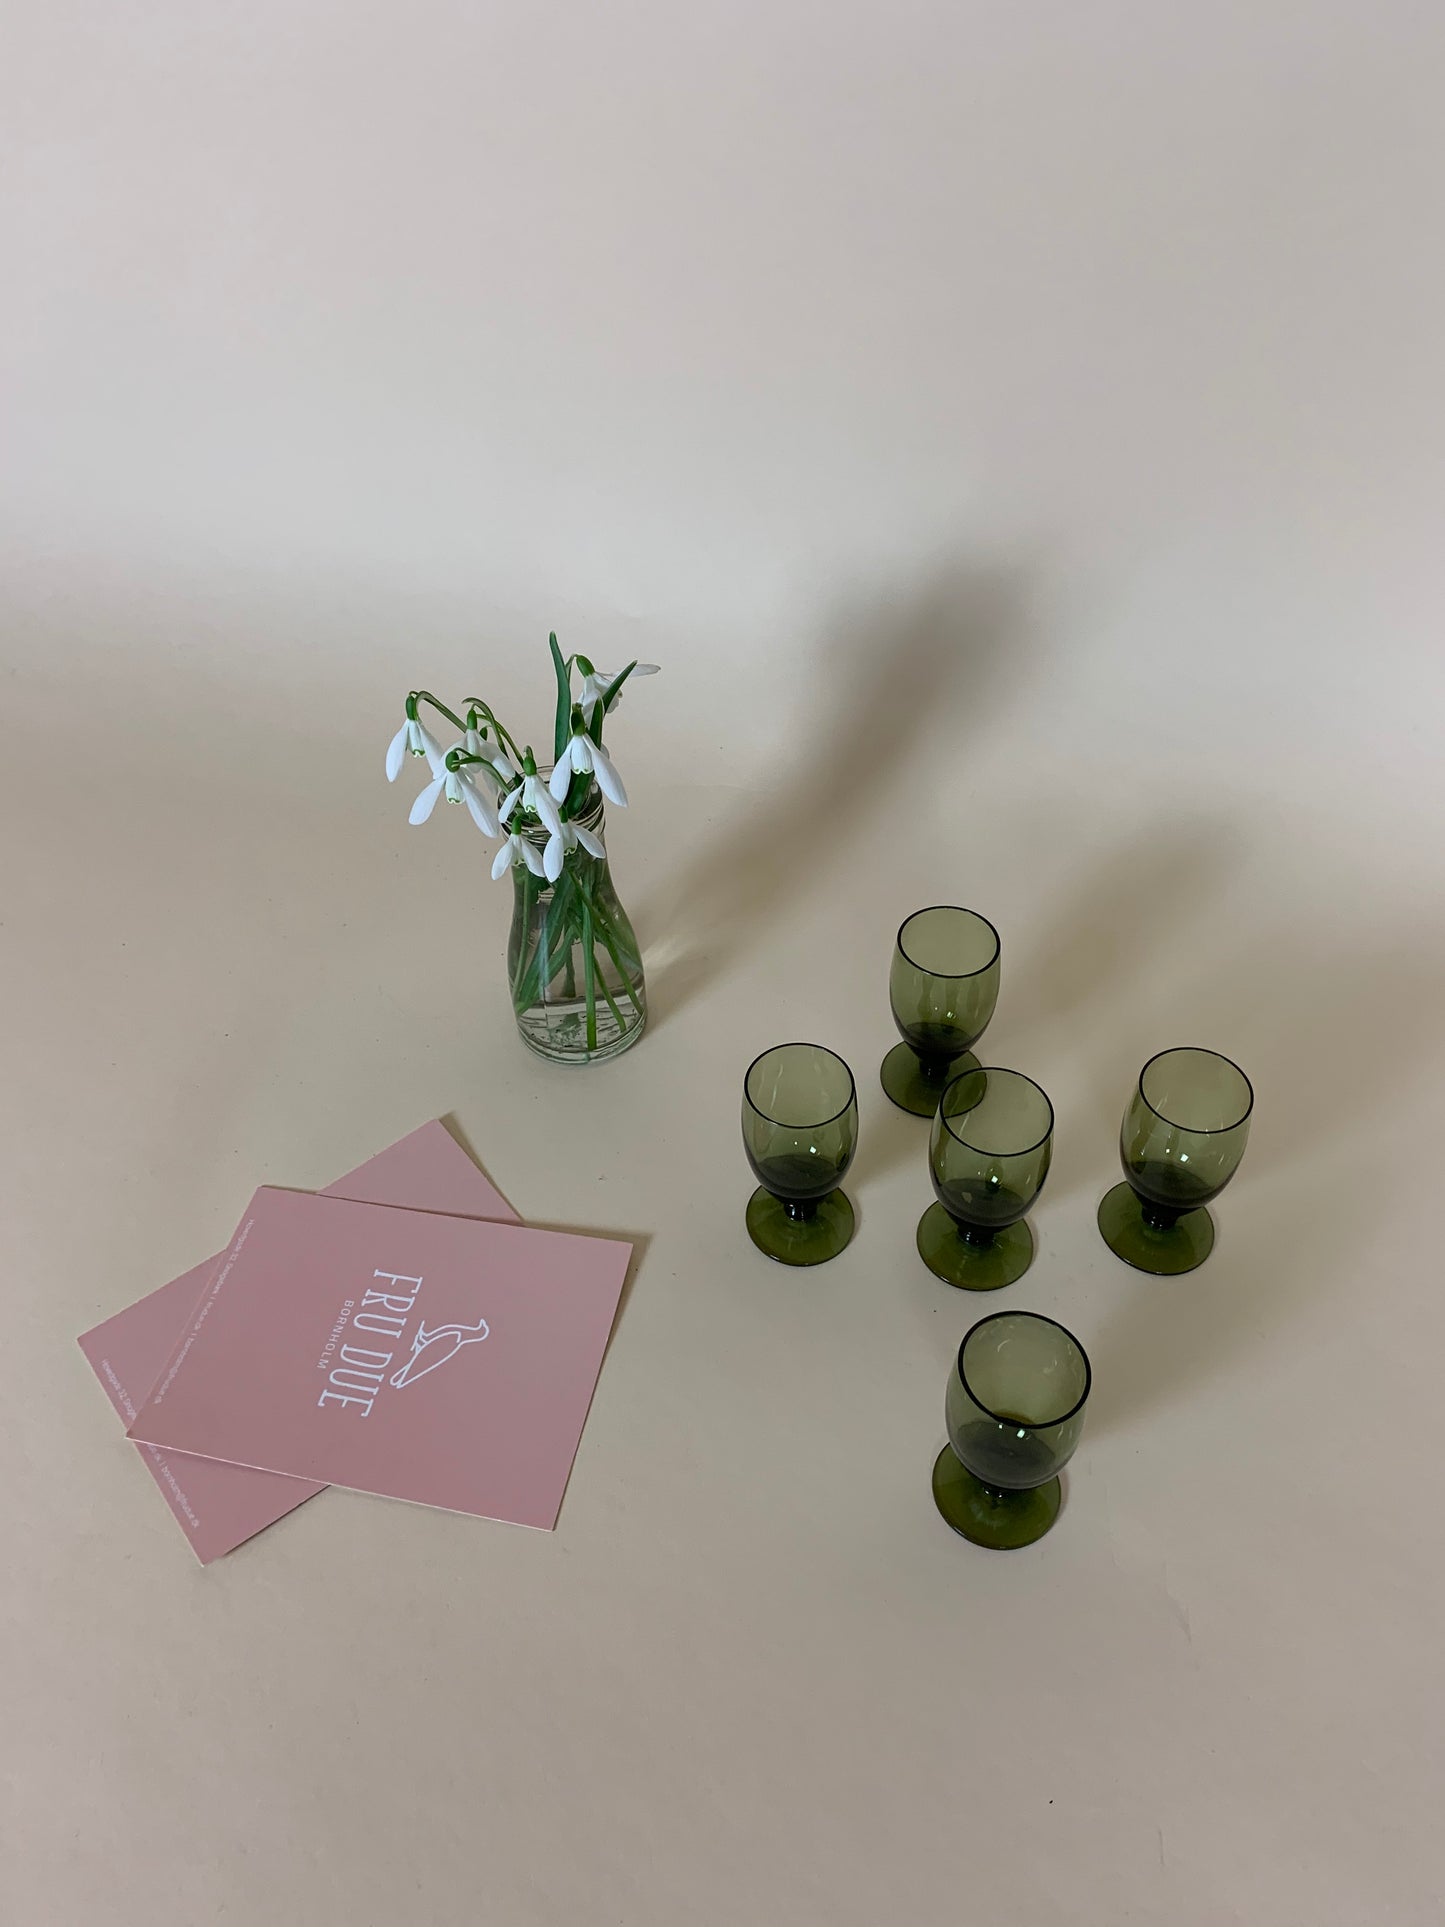 Lille grønt glas eller vase til små blomster